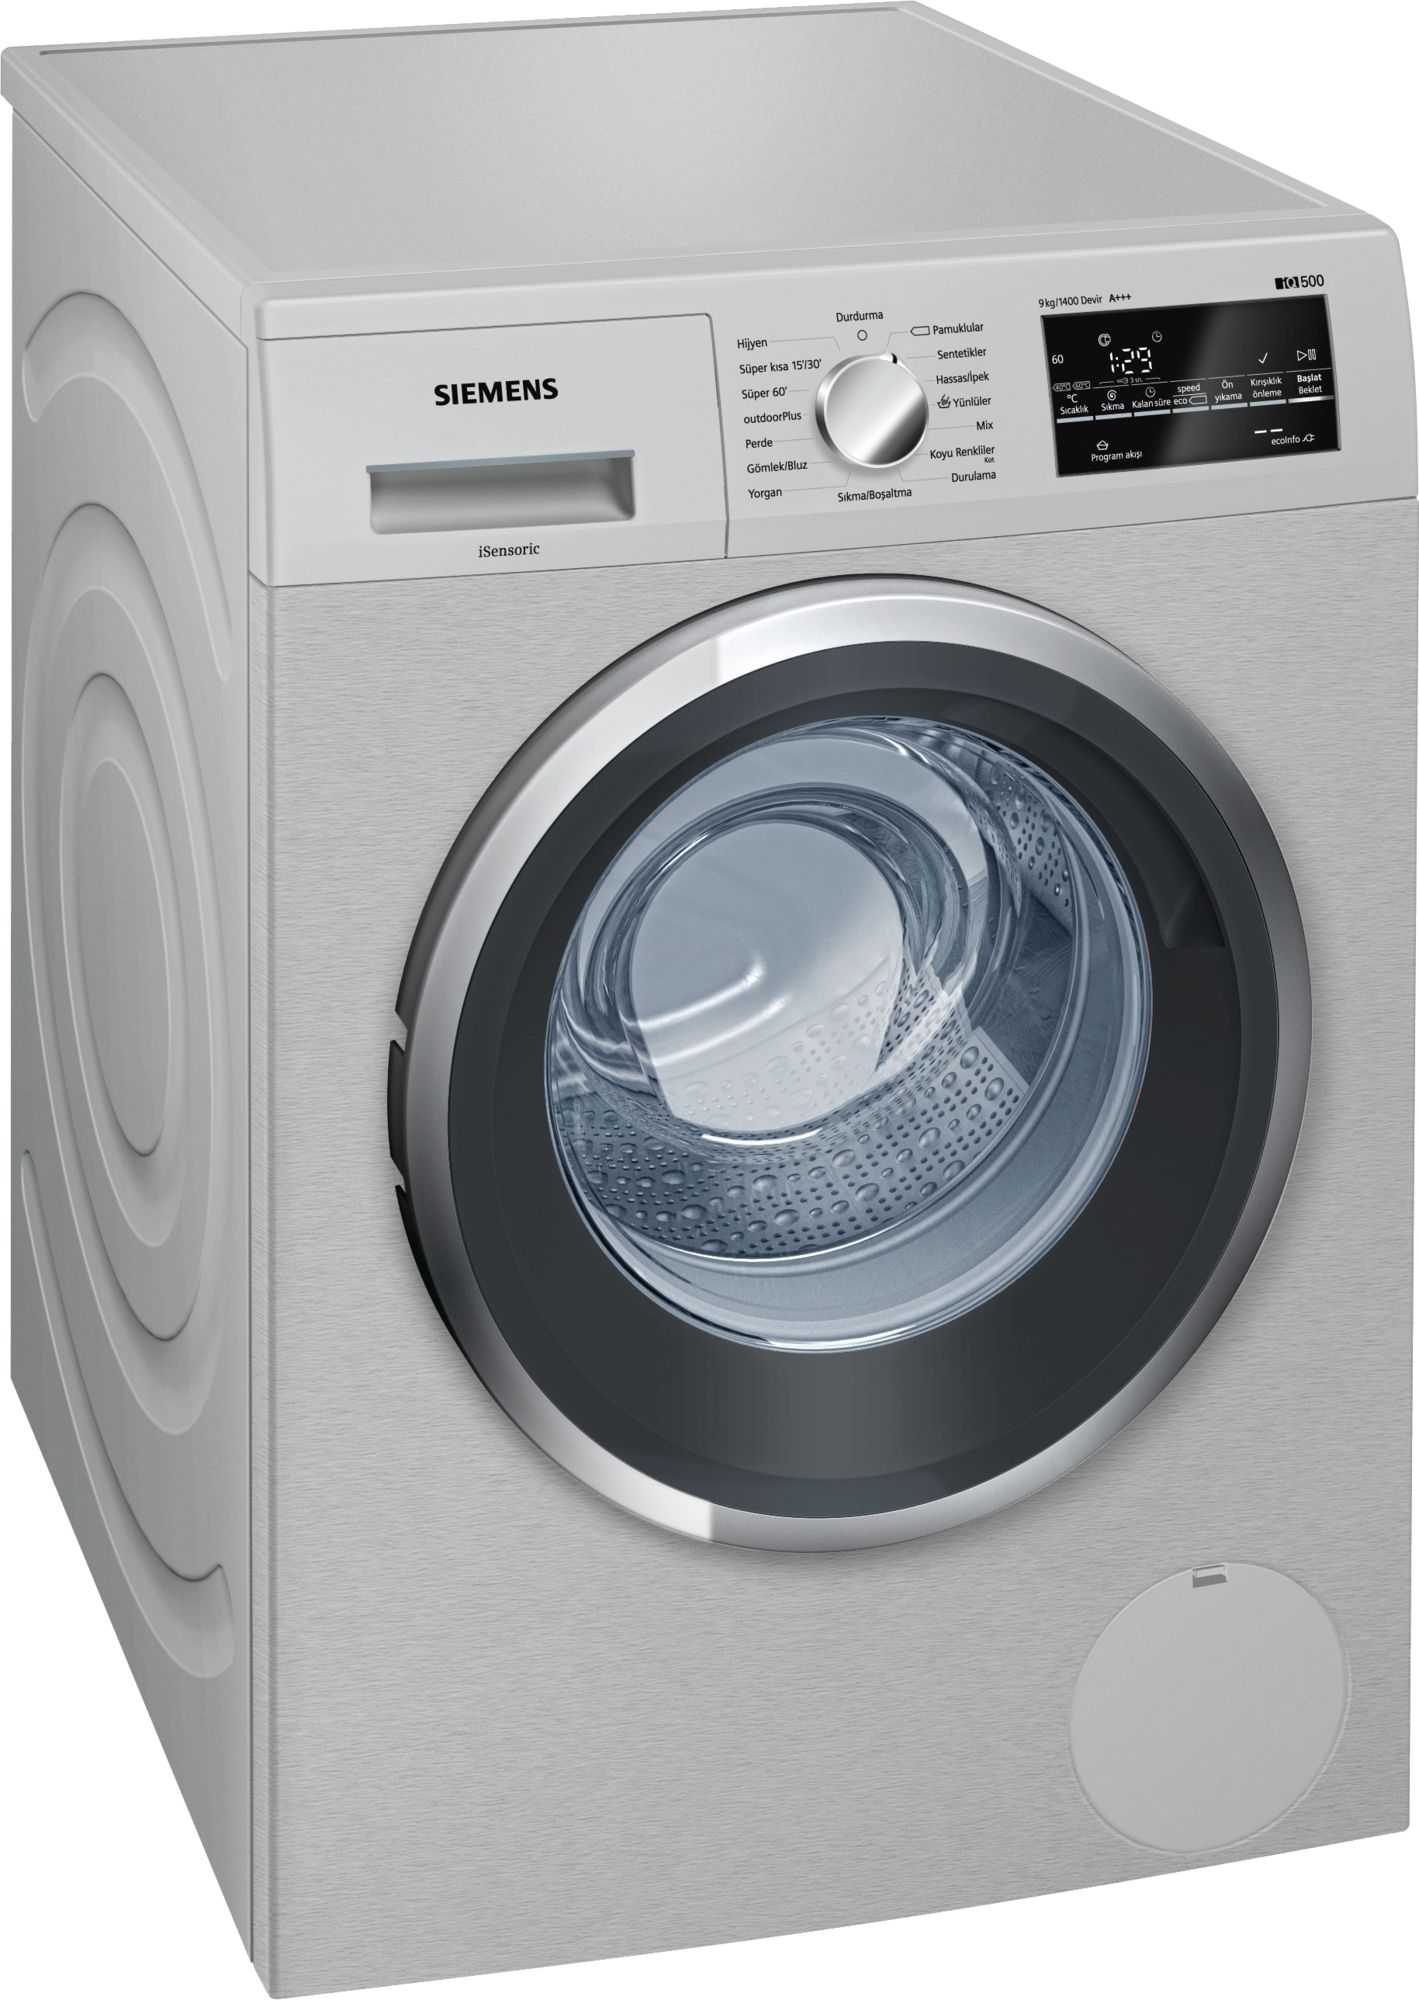 iQ500 Çamaşır Makinası 9 kg Kolay temizlenebilir Inox, 1400 dev./dak.